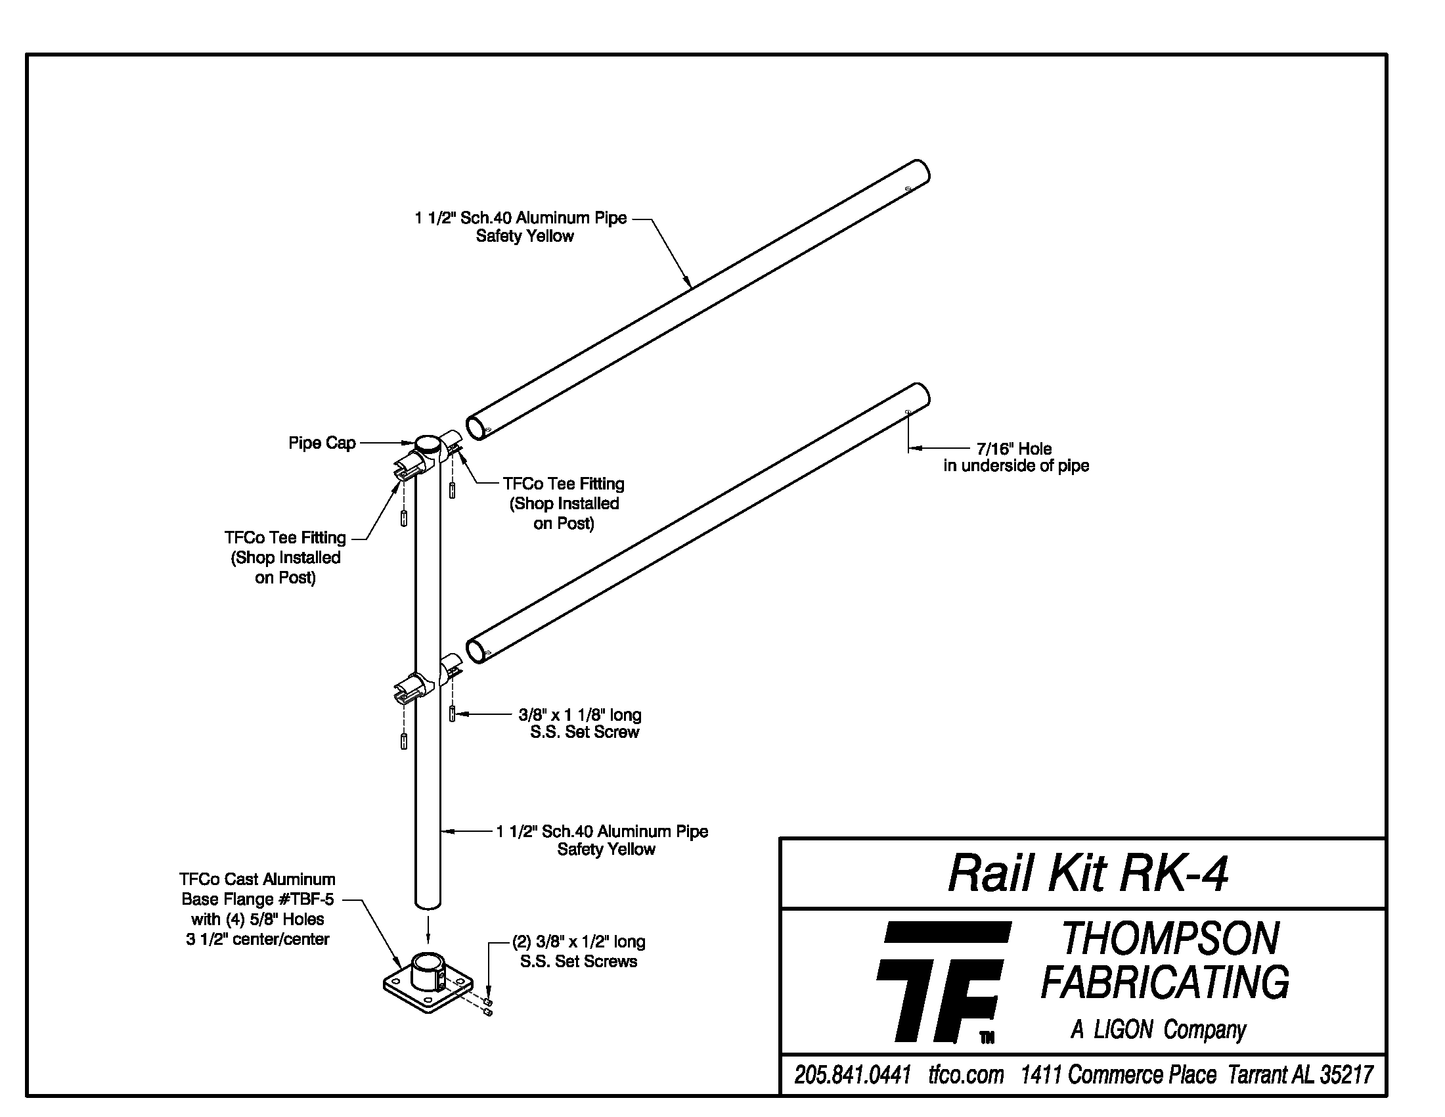 Rail Kit RK-4